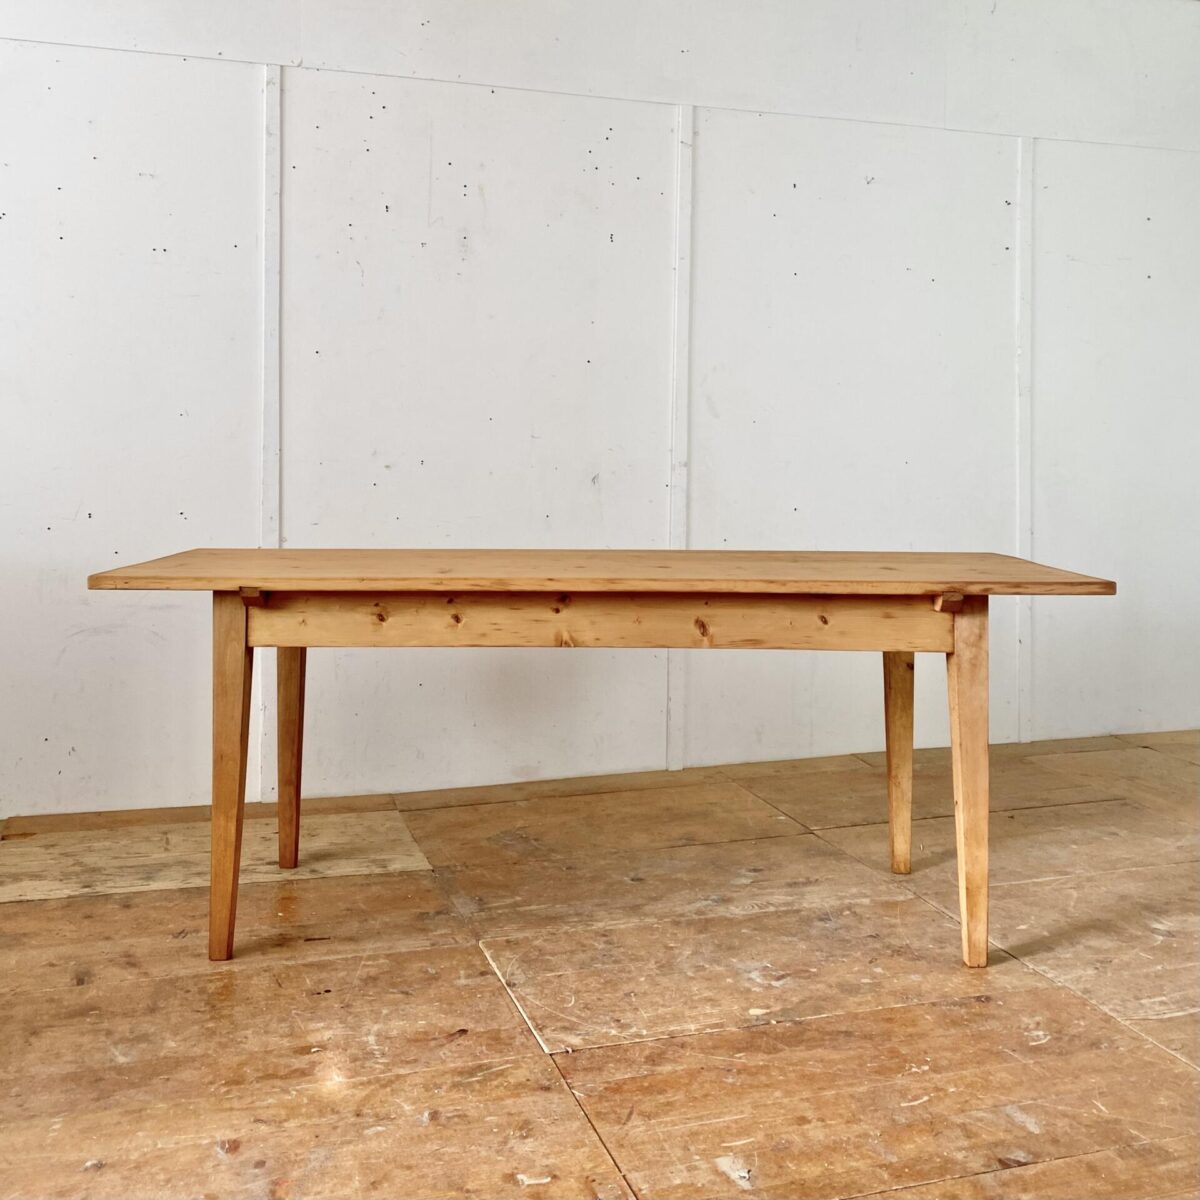 Deuxieme.shop Tannenholz Biedermeiertisch. 196x72.5cm Höhe 75cm. Der Tisch ist in stabilem überarbeiteten Zustand, die Holz Oberflächen sind geschliffen und mit Naturöl behandelt. Es finden bis zu 8 Personen daran Platz.